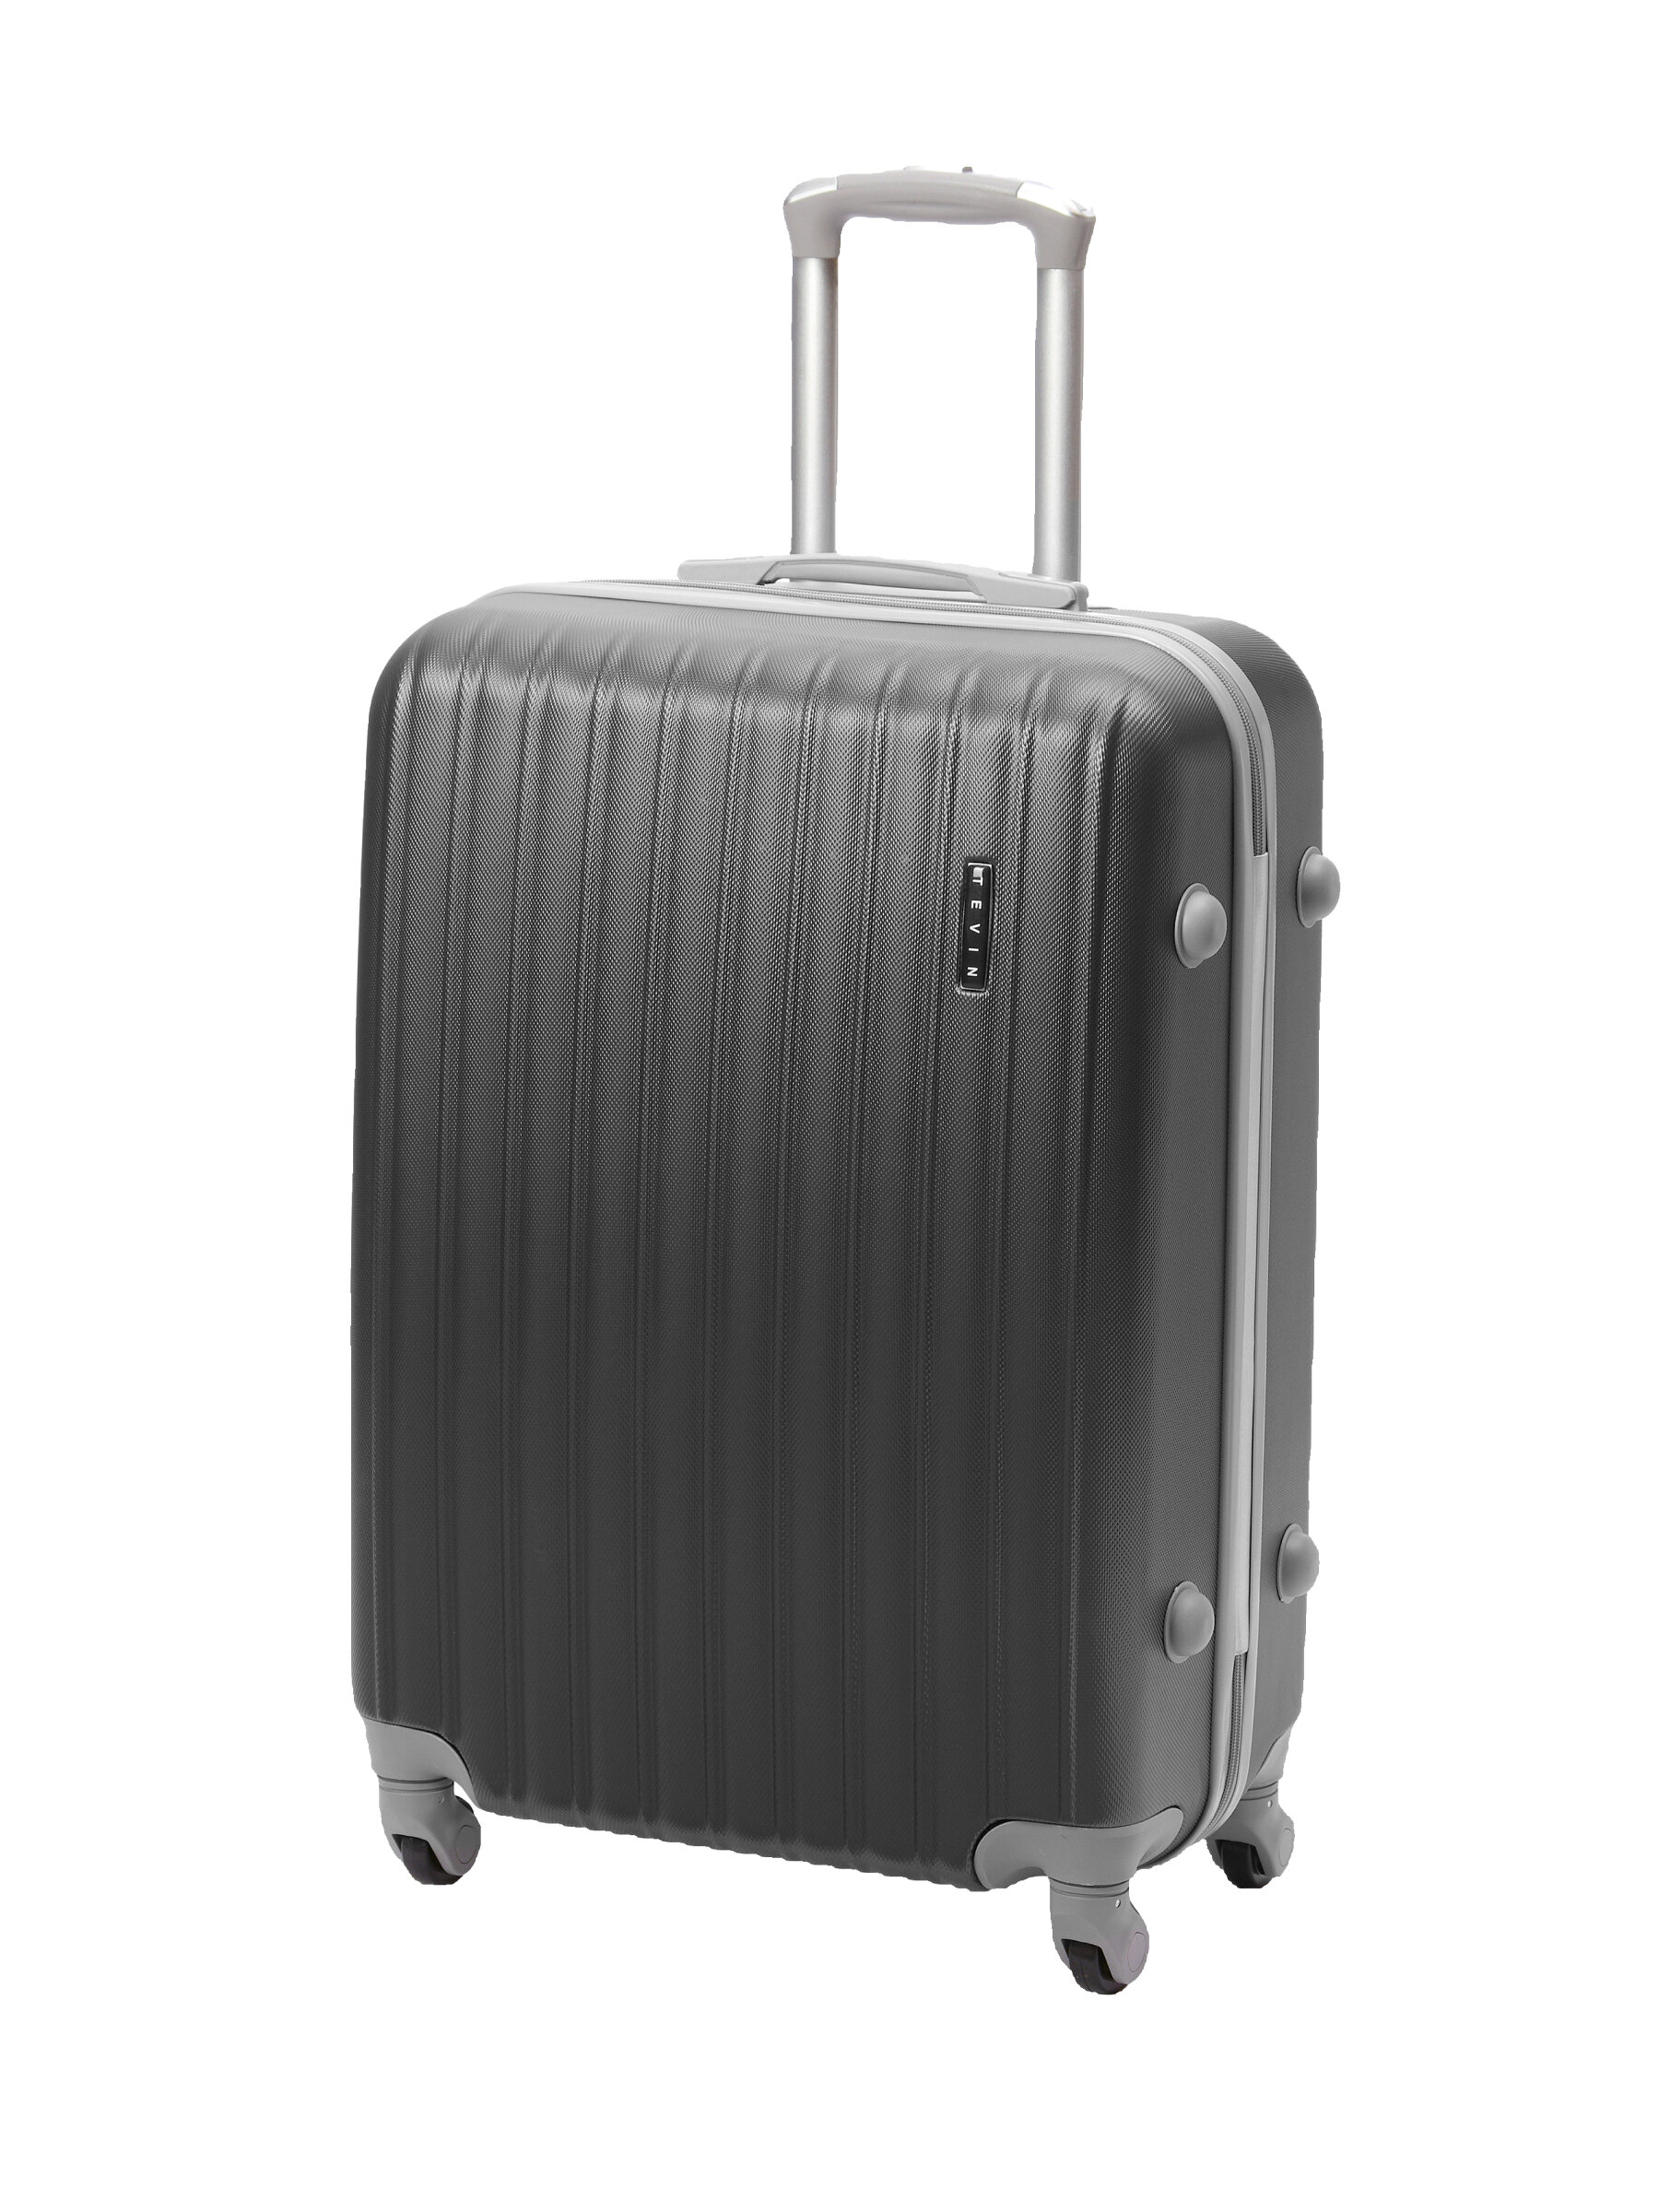 Чемодан на колесах дорожный небольшой средний багаж для путешествий s+ TEVIN размер С+ 60 см 52 л легкий 2.6 кг прочный abs пластик Серый темный